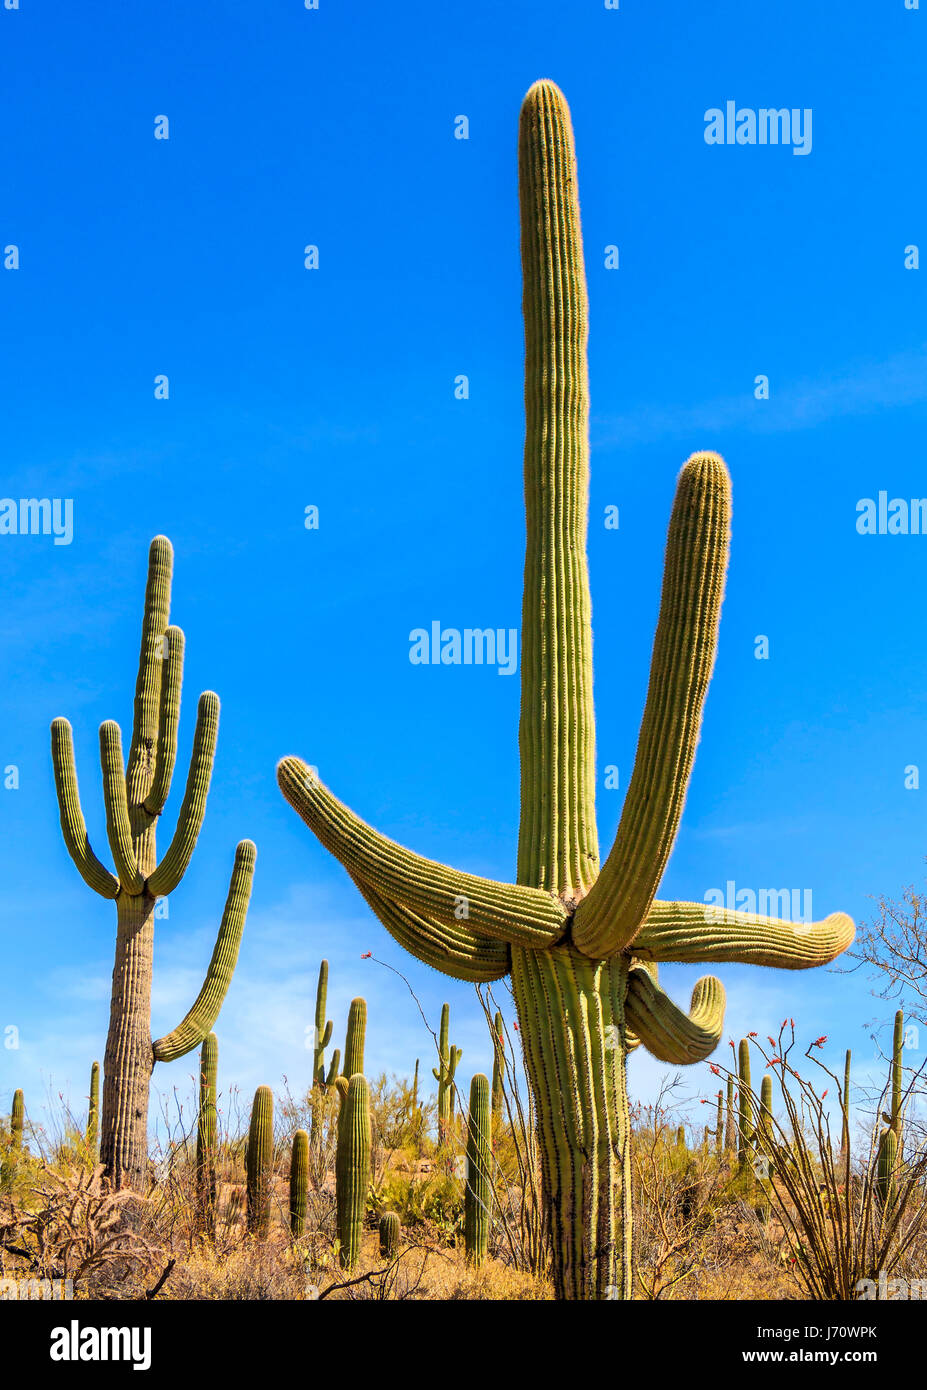 Le saguaro est un arbre cactus qui peut atteindre plus de 70 pieds (21 m)  de hauteur. Il est originaire de le désert de Sonora en Arizona, l'État  mexicain de So Photo